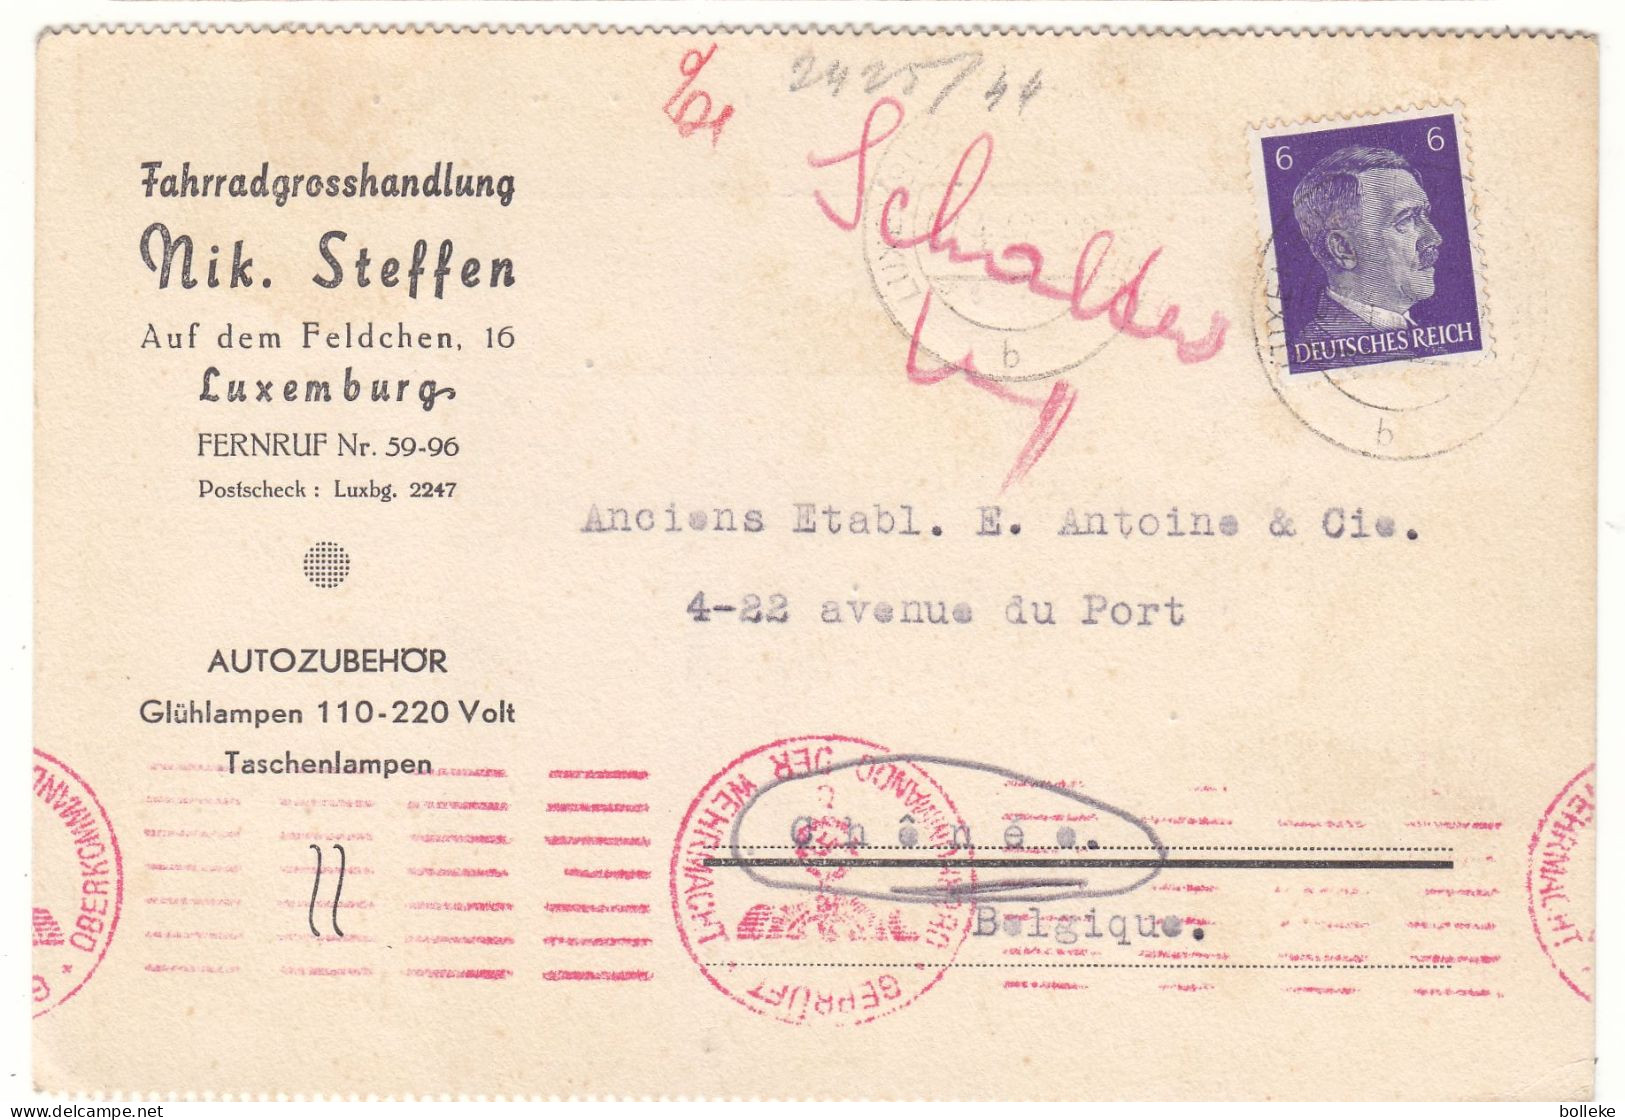 Allemagne - Troisième Reich - Carte Postale De 1942 - Oblit Luxembourg - Exp Vers Chênée - Avec Censure - Hitler - - Lettres & Documents